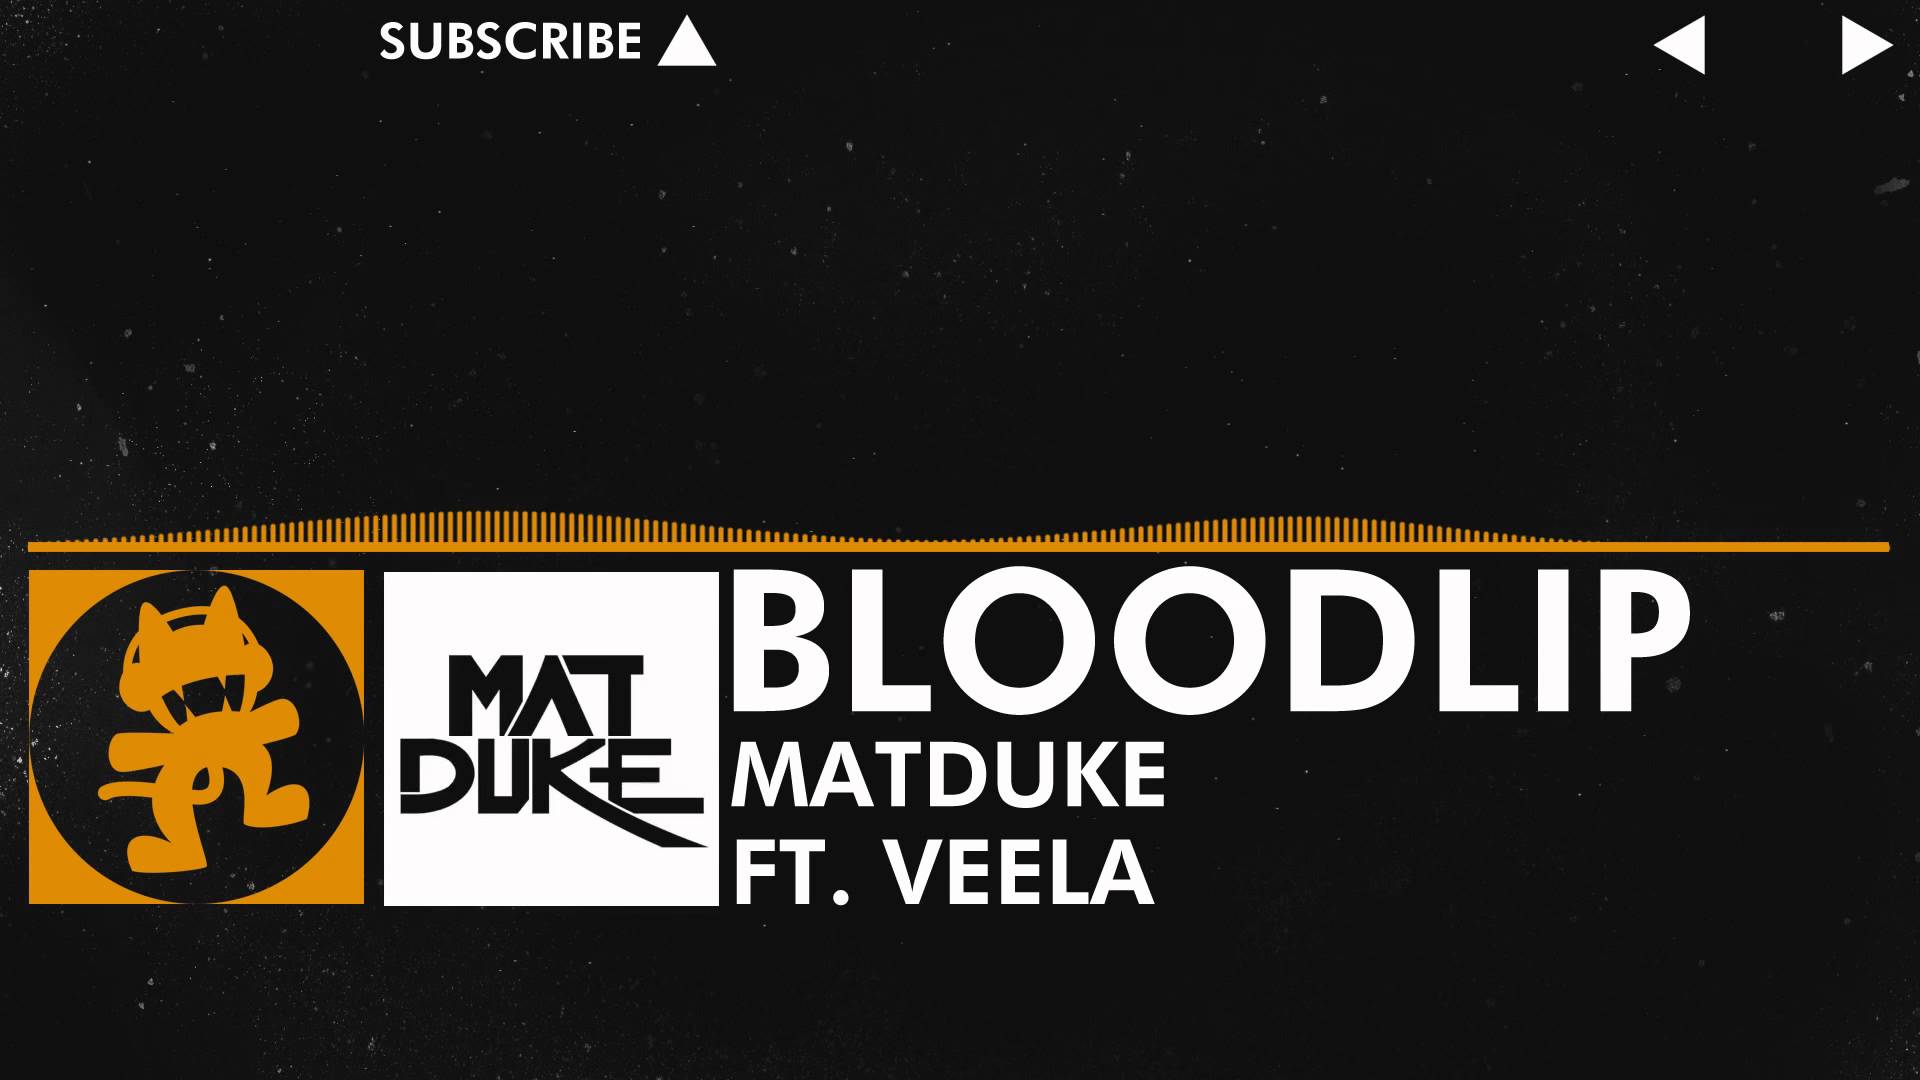 [Progressive House] - Matduke feat. Veela - Bloodlip [Monstercat Release]